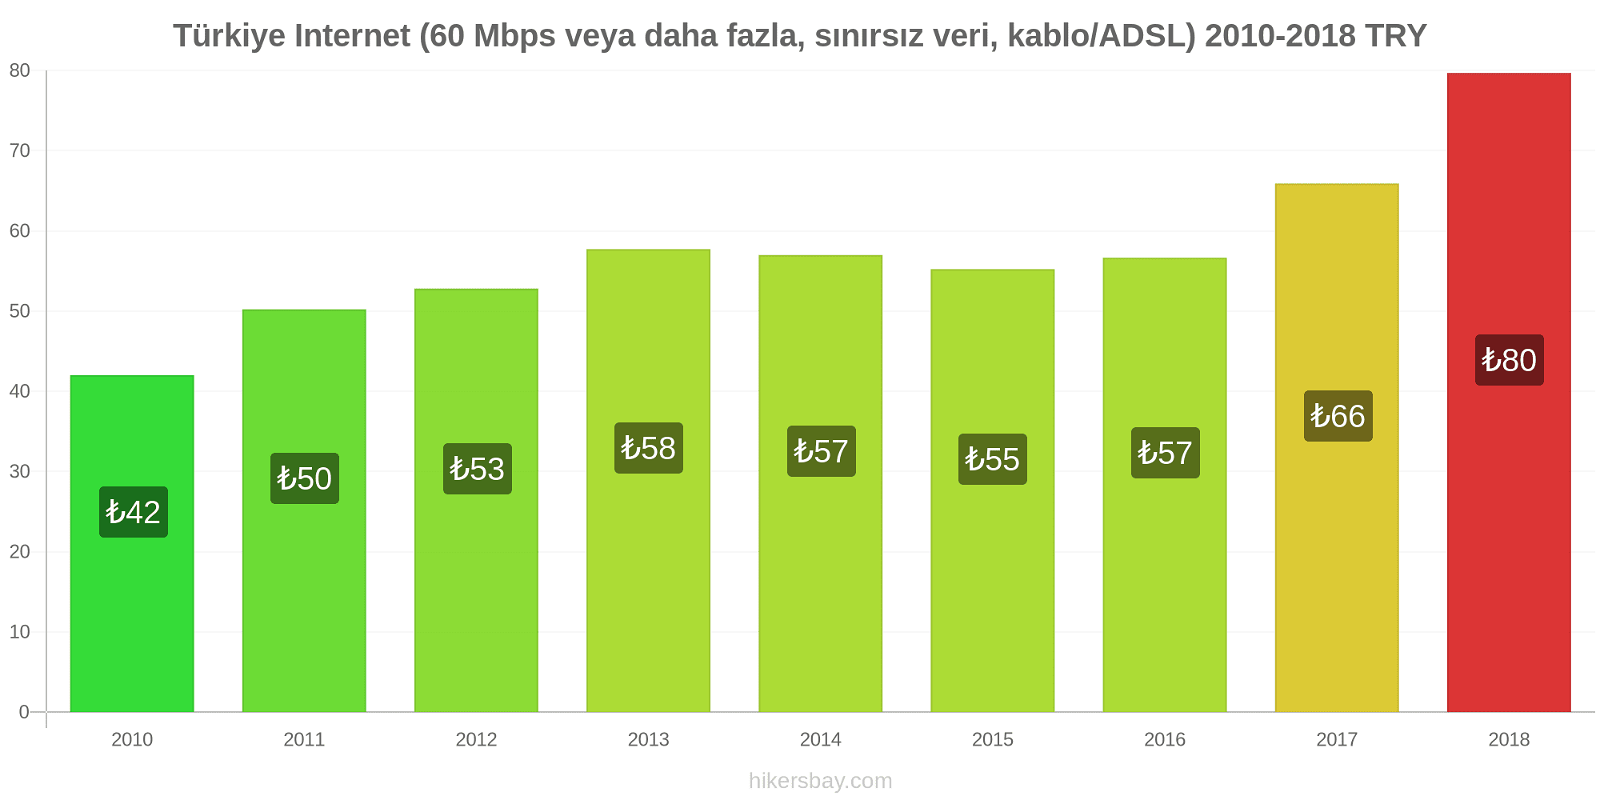 Türkiye fiyat değişiklikleri İnternet (60 Mbps veya daha fazla, sınırsız veri, kablo/ADSL) hikersbay.com